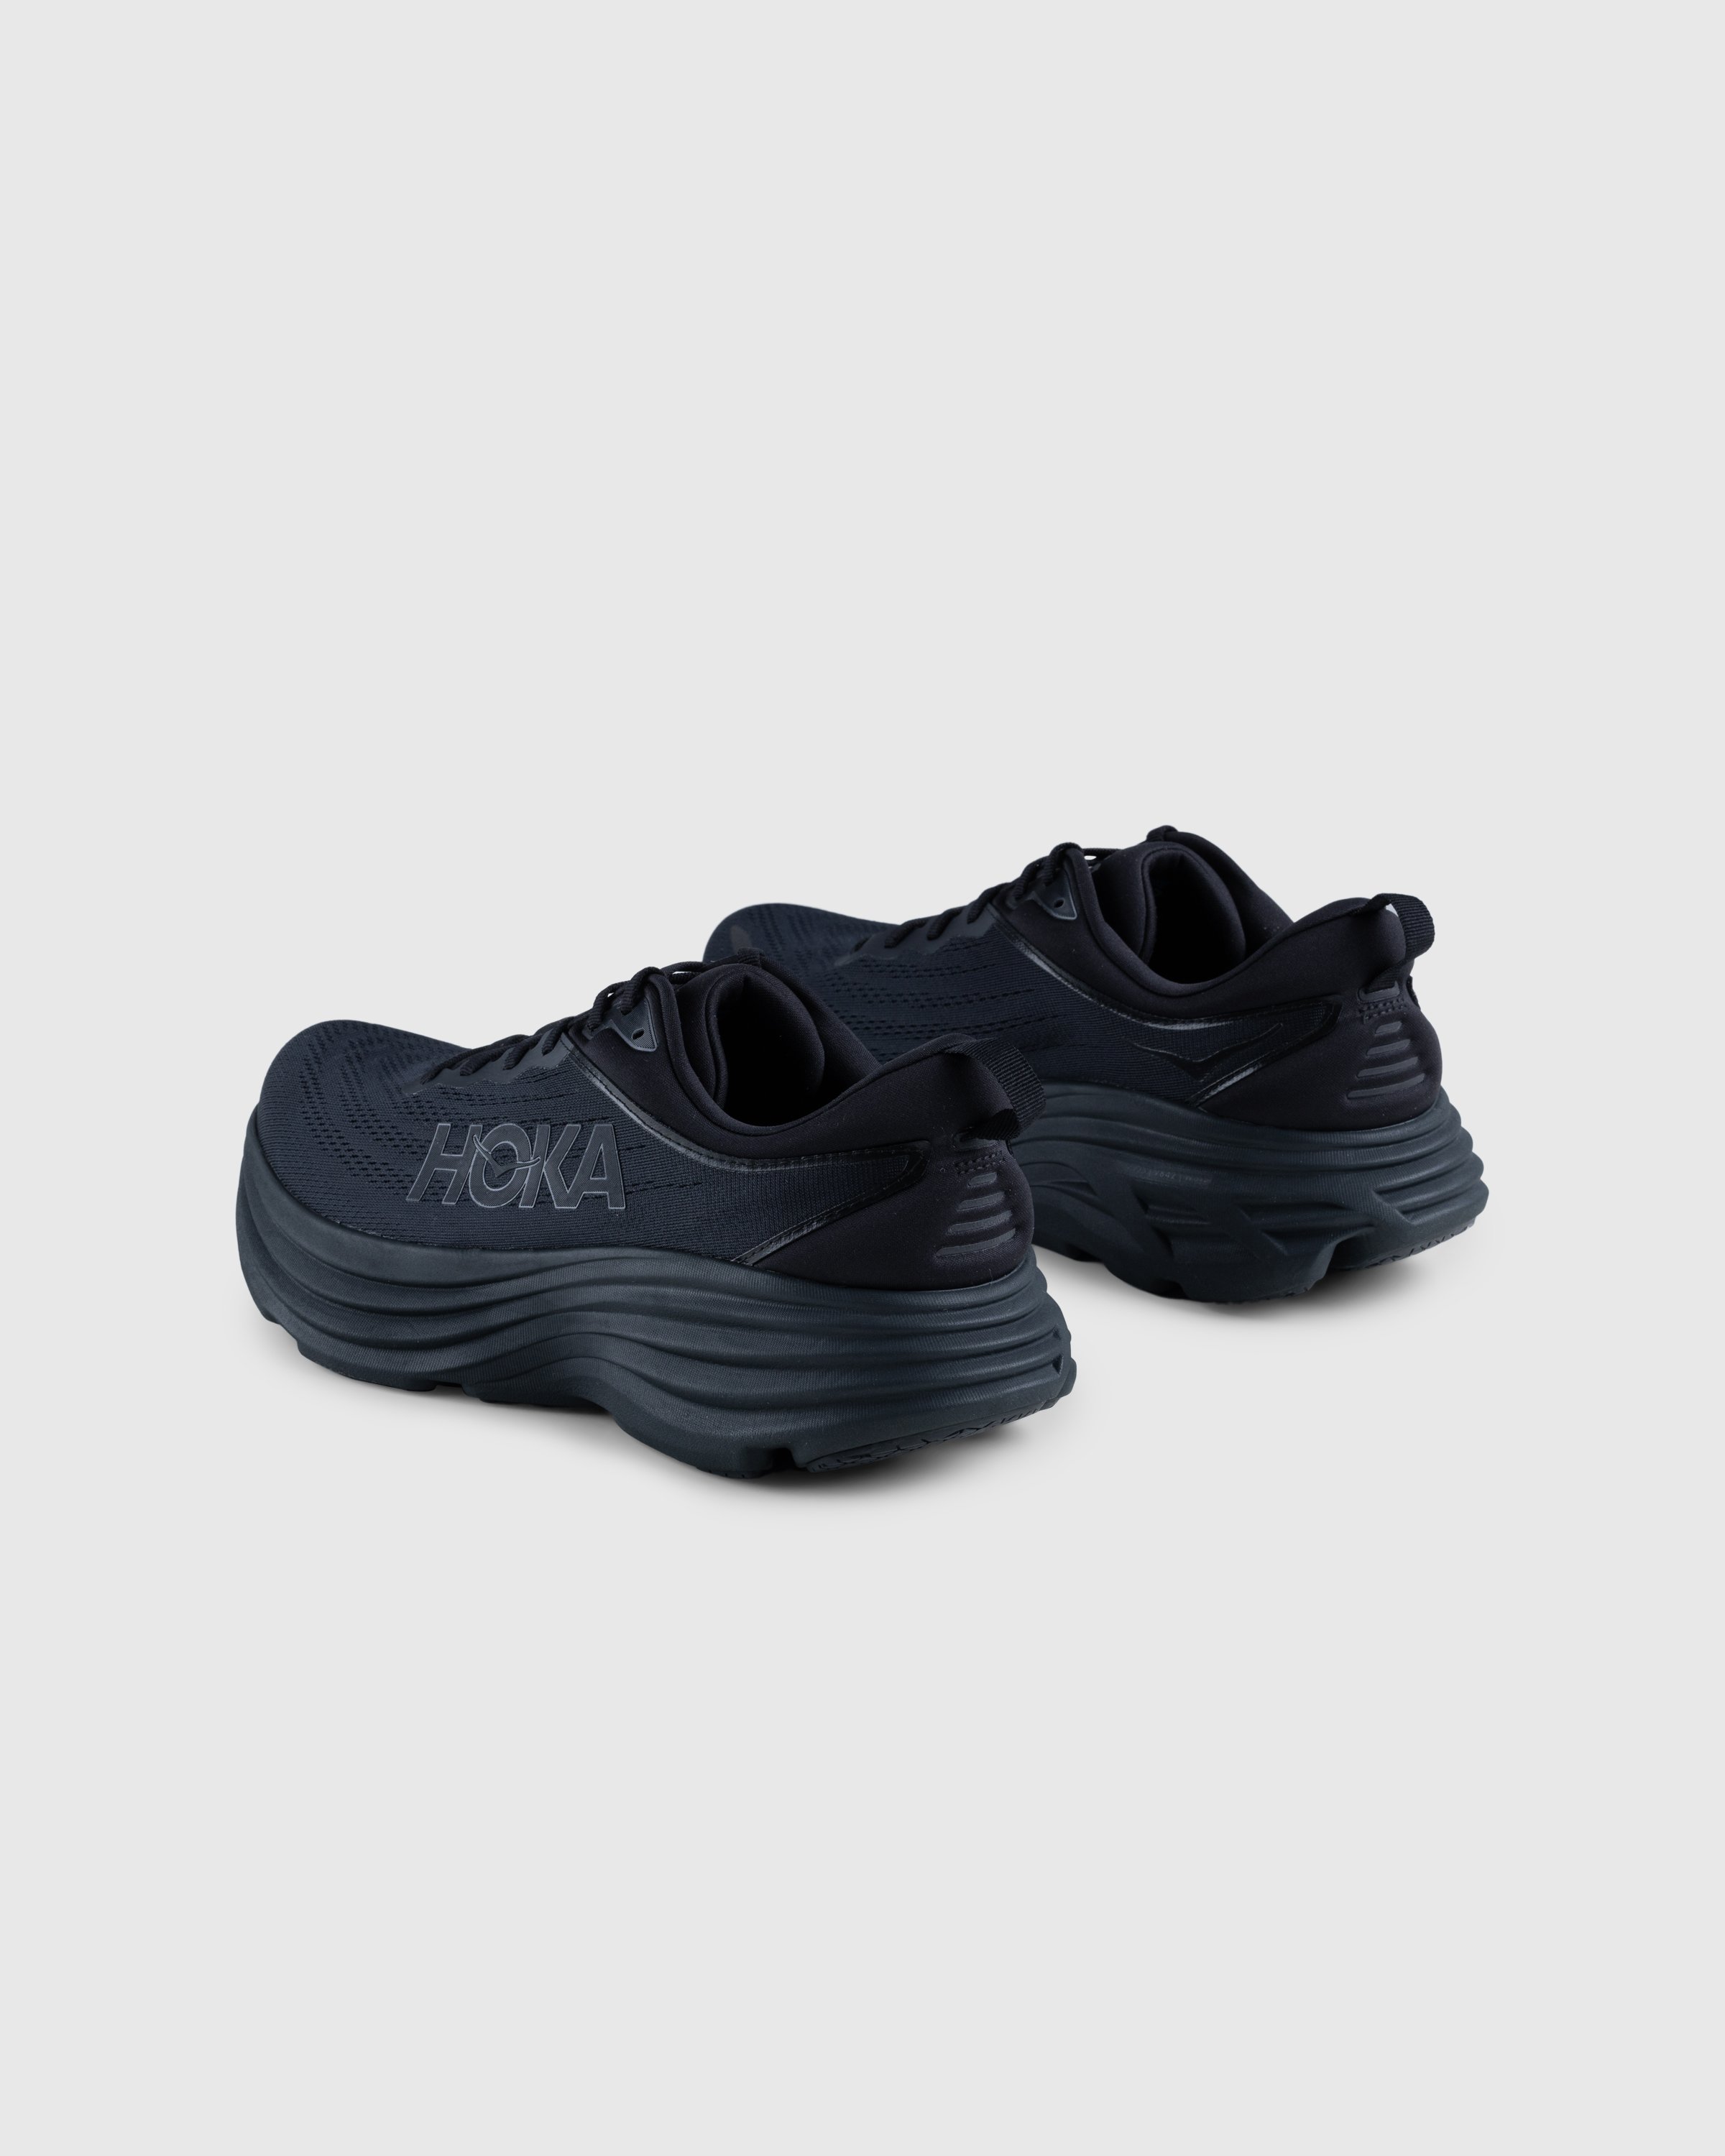 HOKA - Bondi 8 Black/Black - Footwear - Black - Image 4